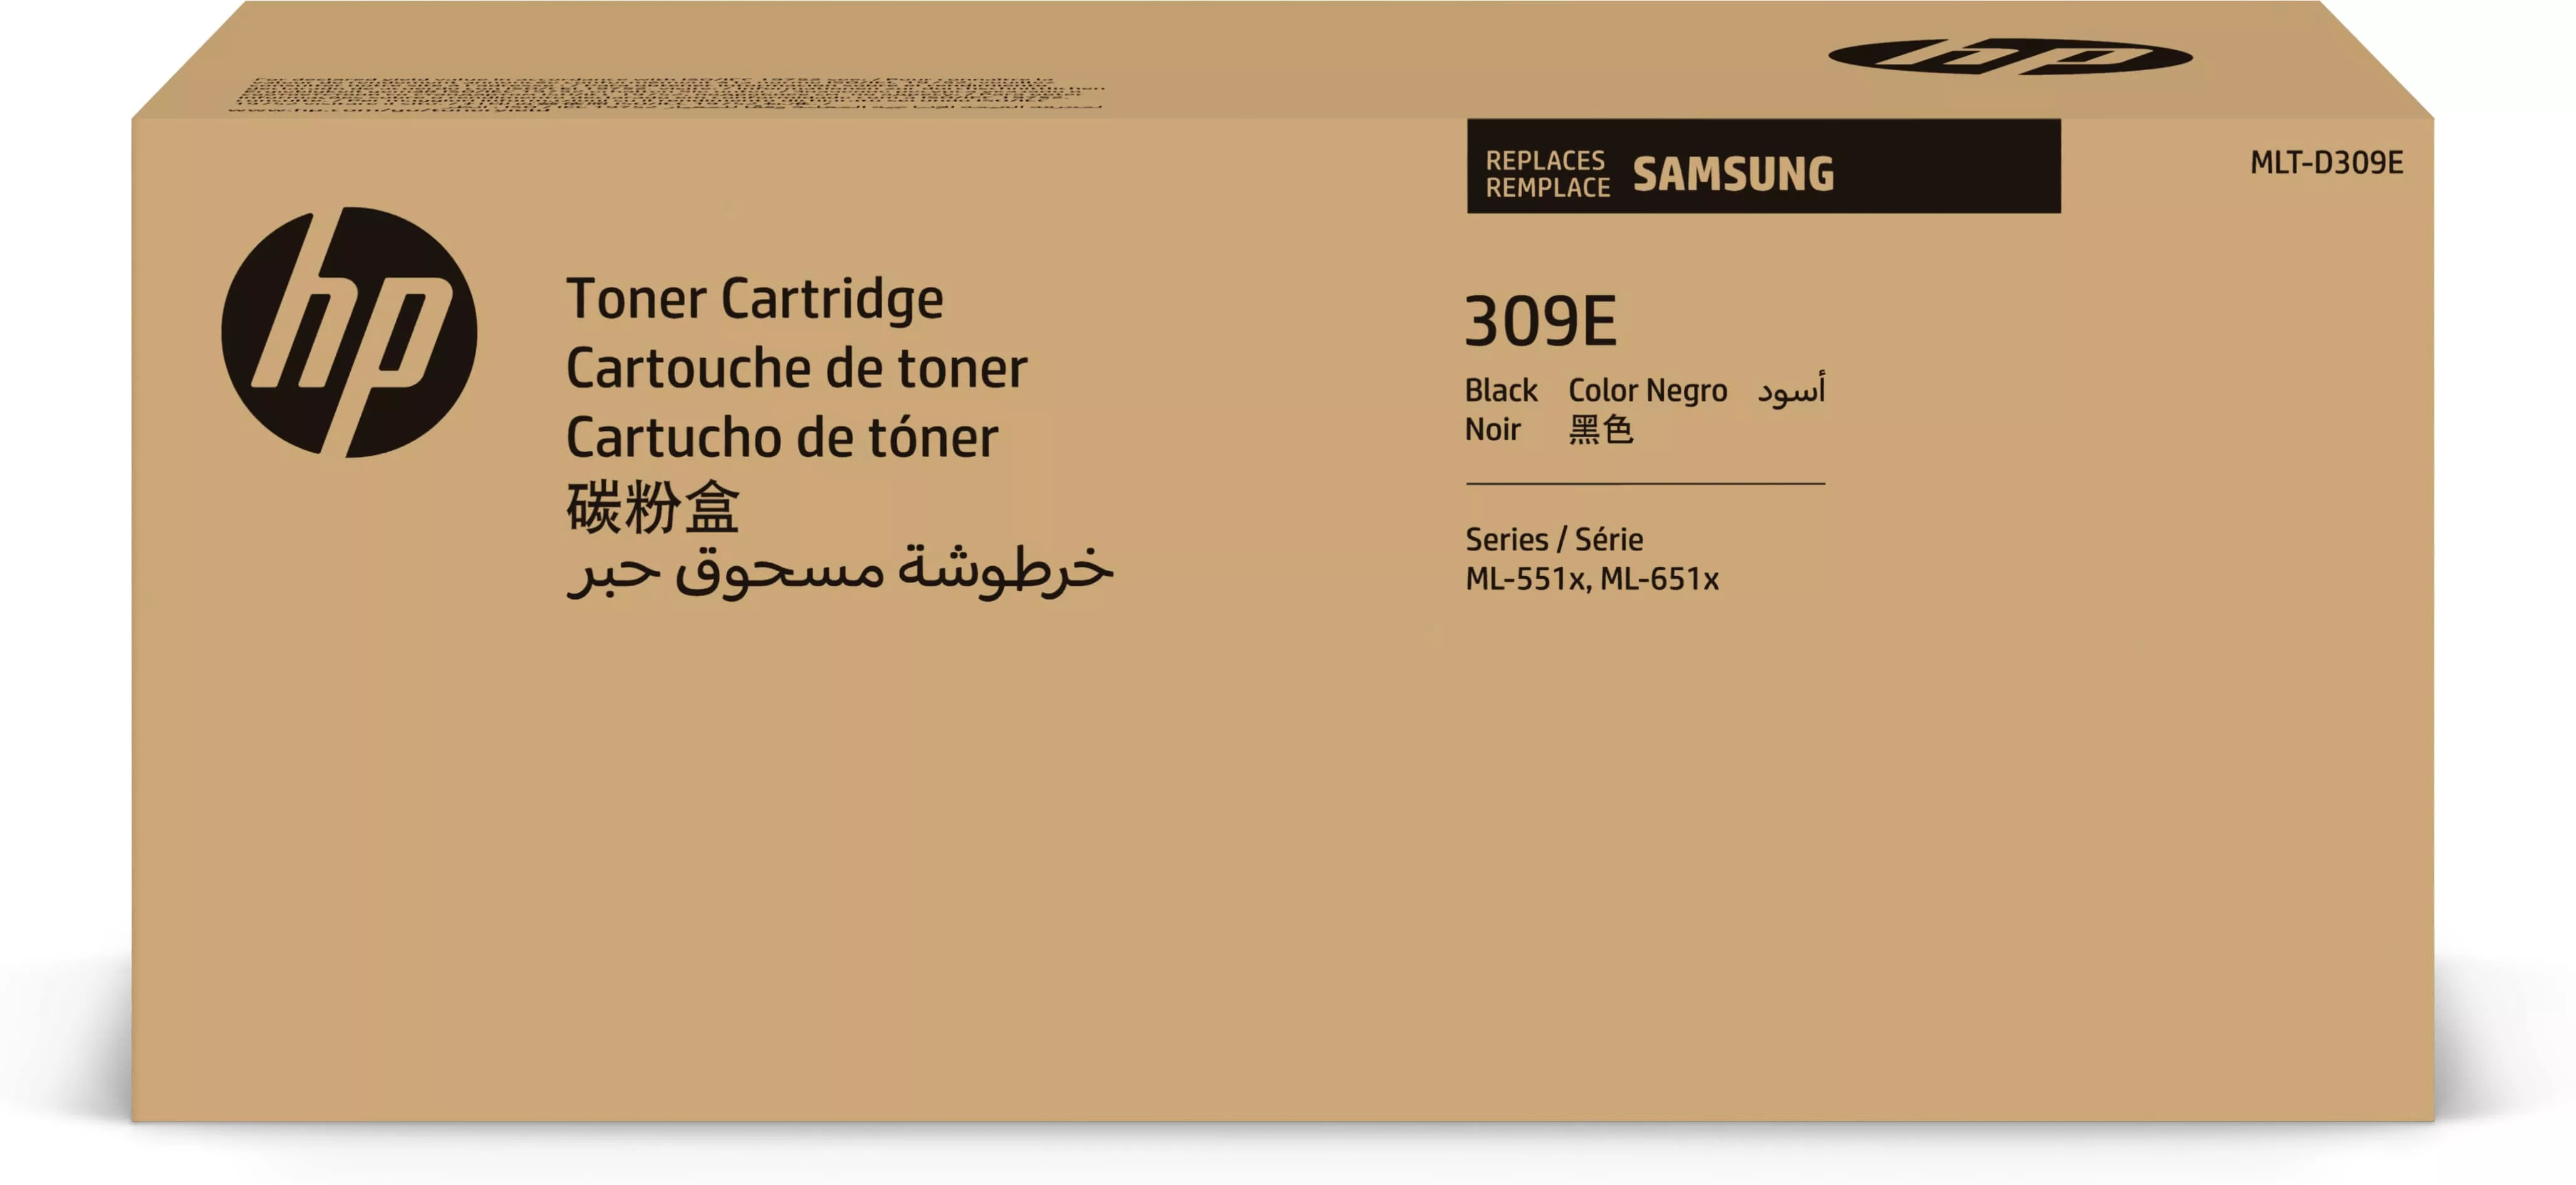 Achat HP Cartouche de toner noir très grande capacité Samsung au meilleur prix